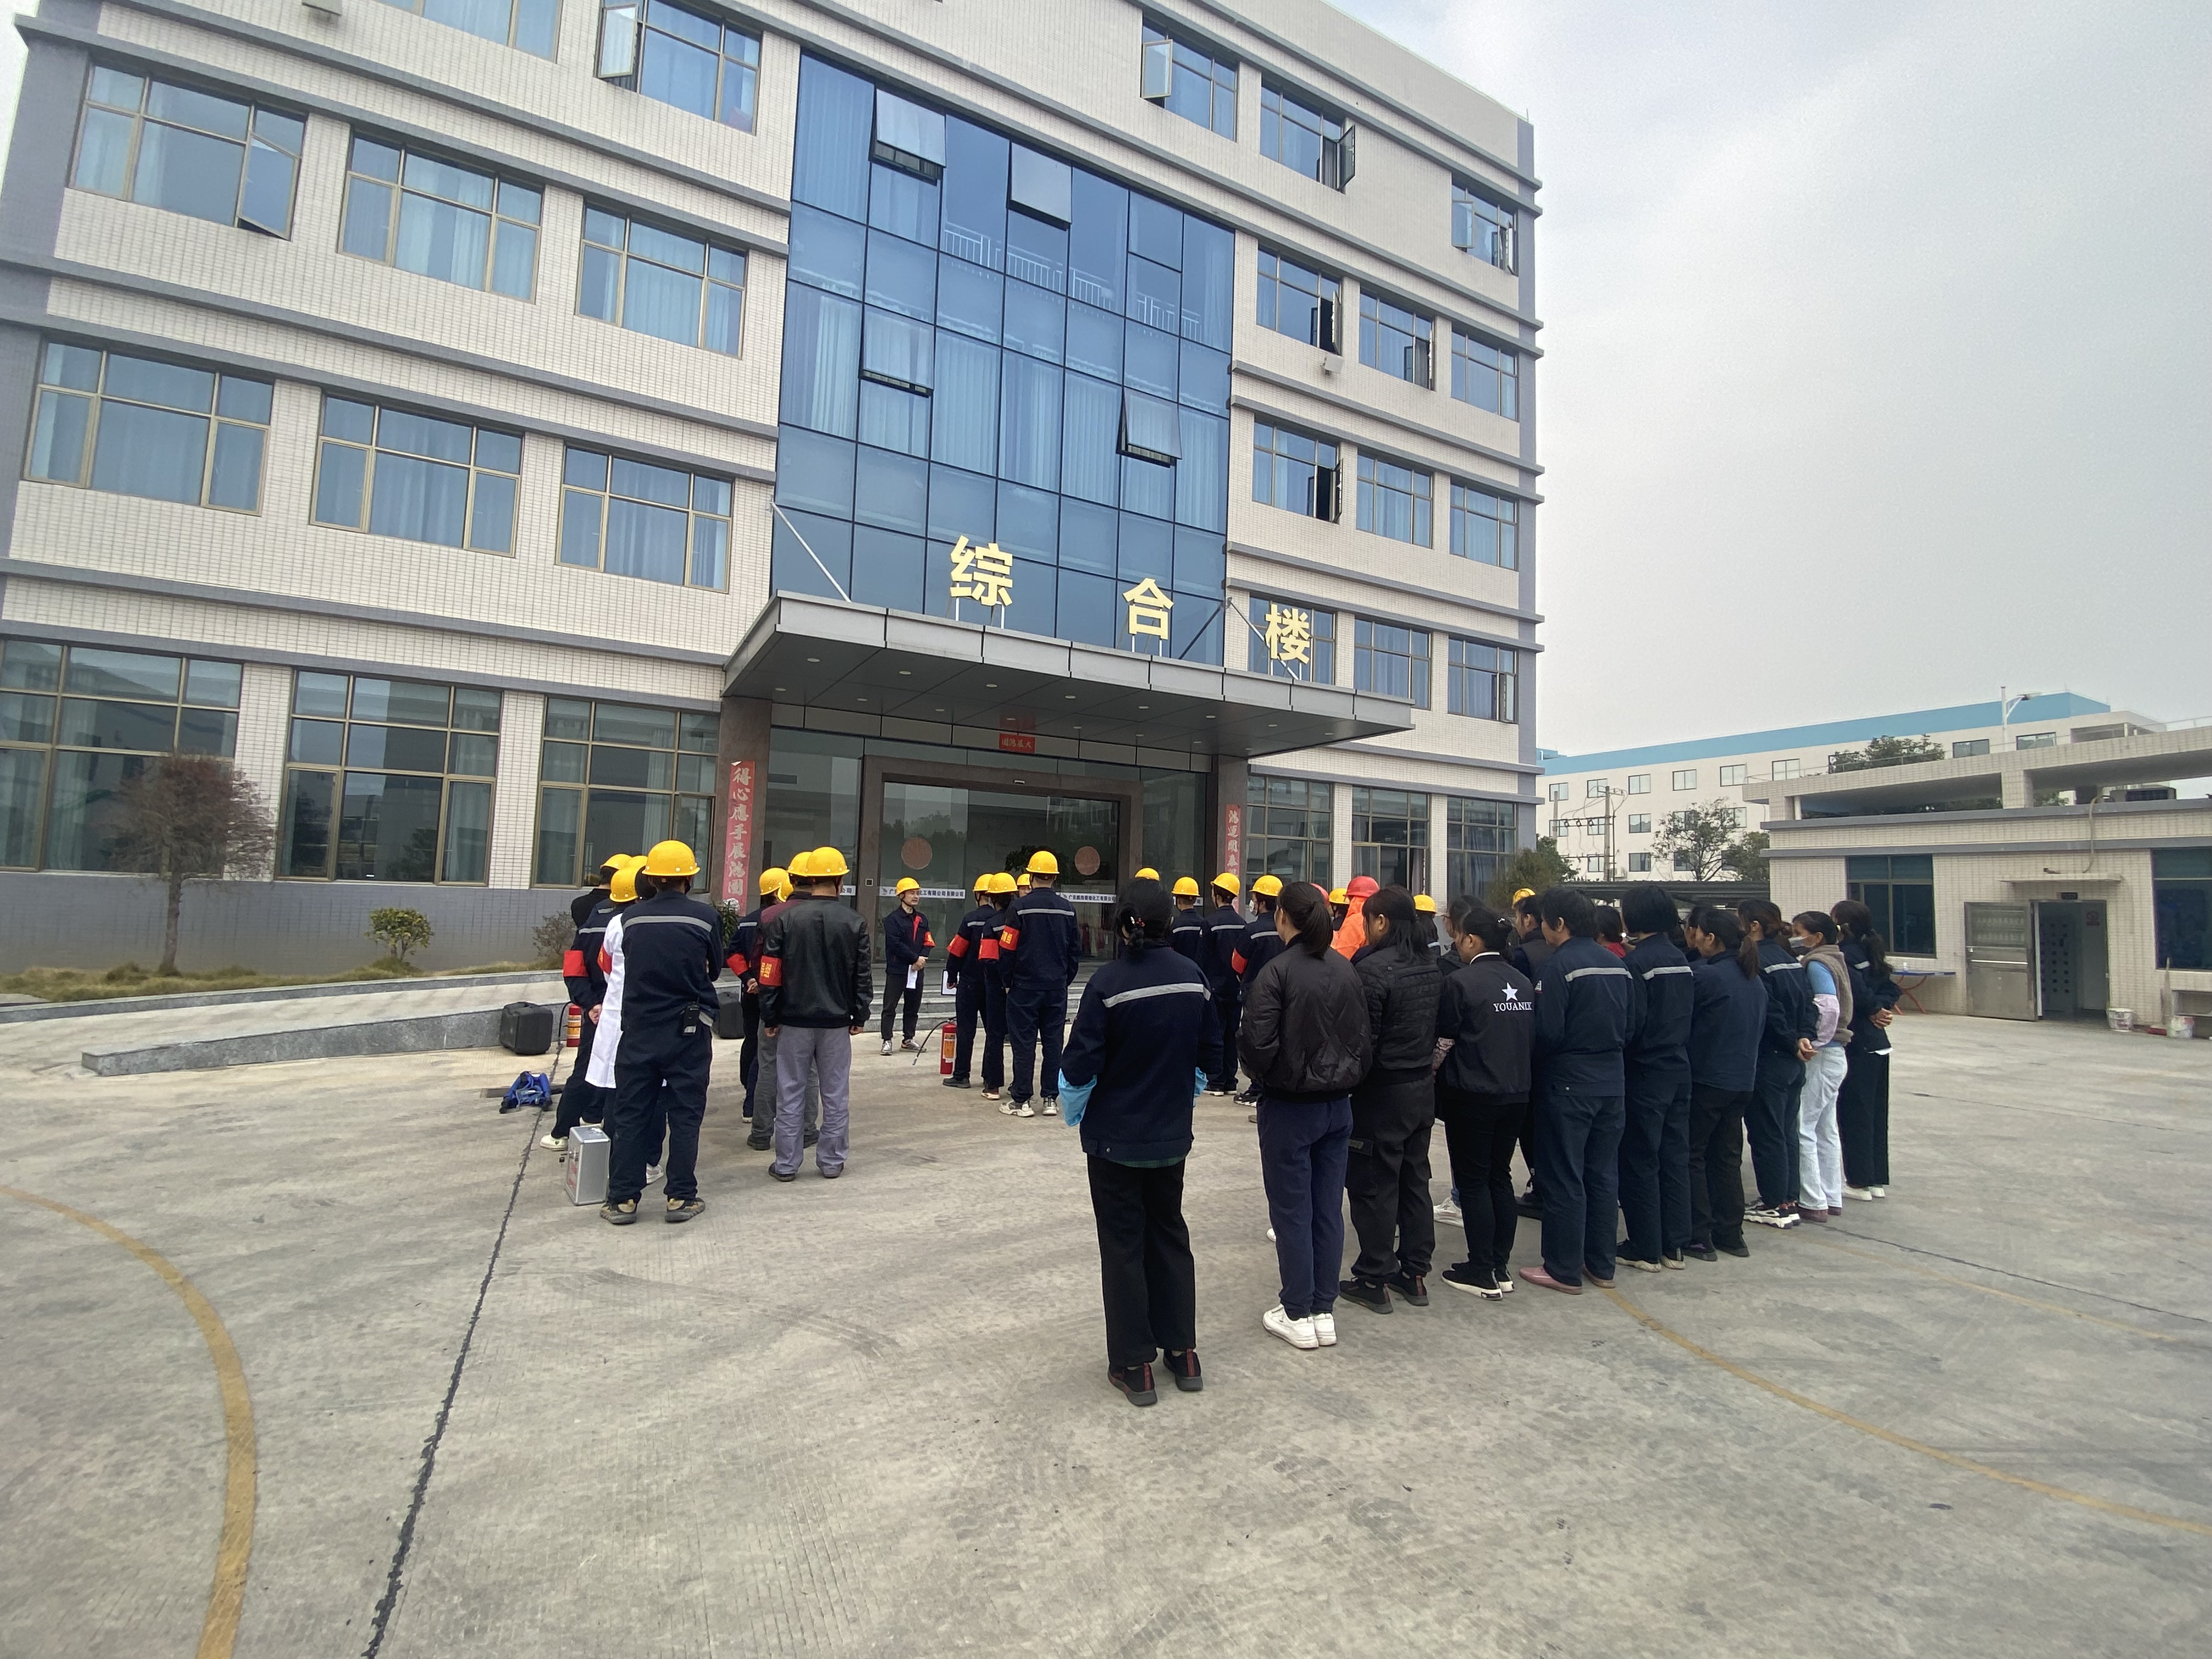 Η επίσημη άσκηση πυρκαγιάς Pengwei丨 Διεξήχθη στις 12 Δεκεμβρίου 2021